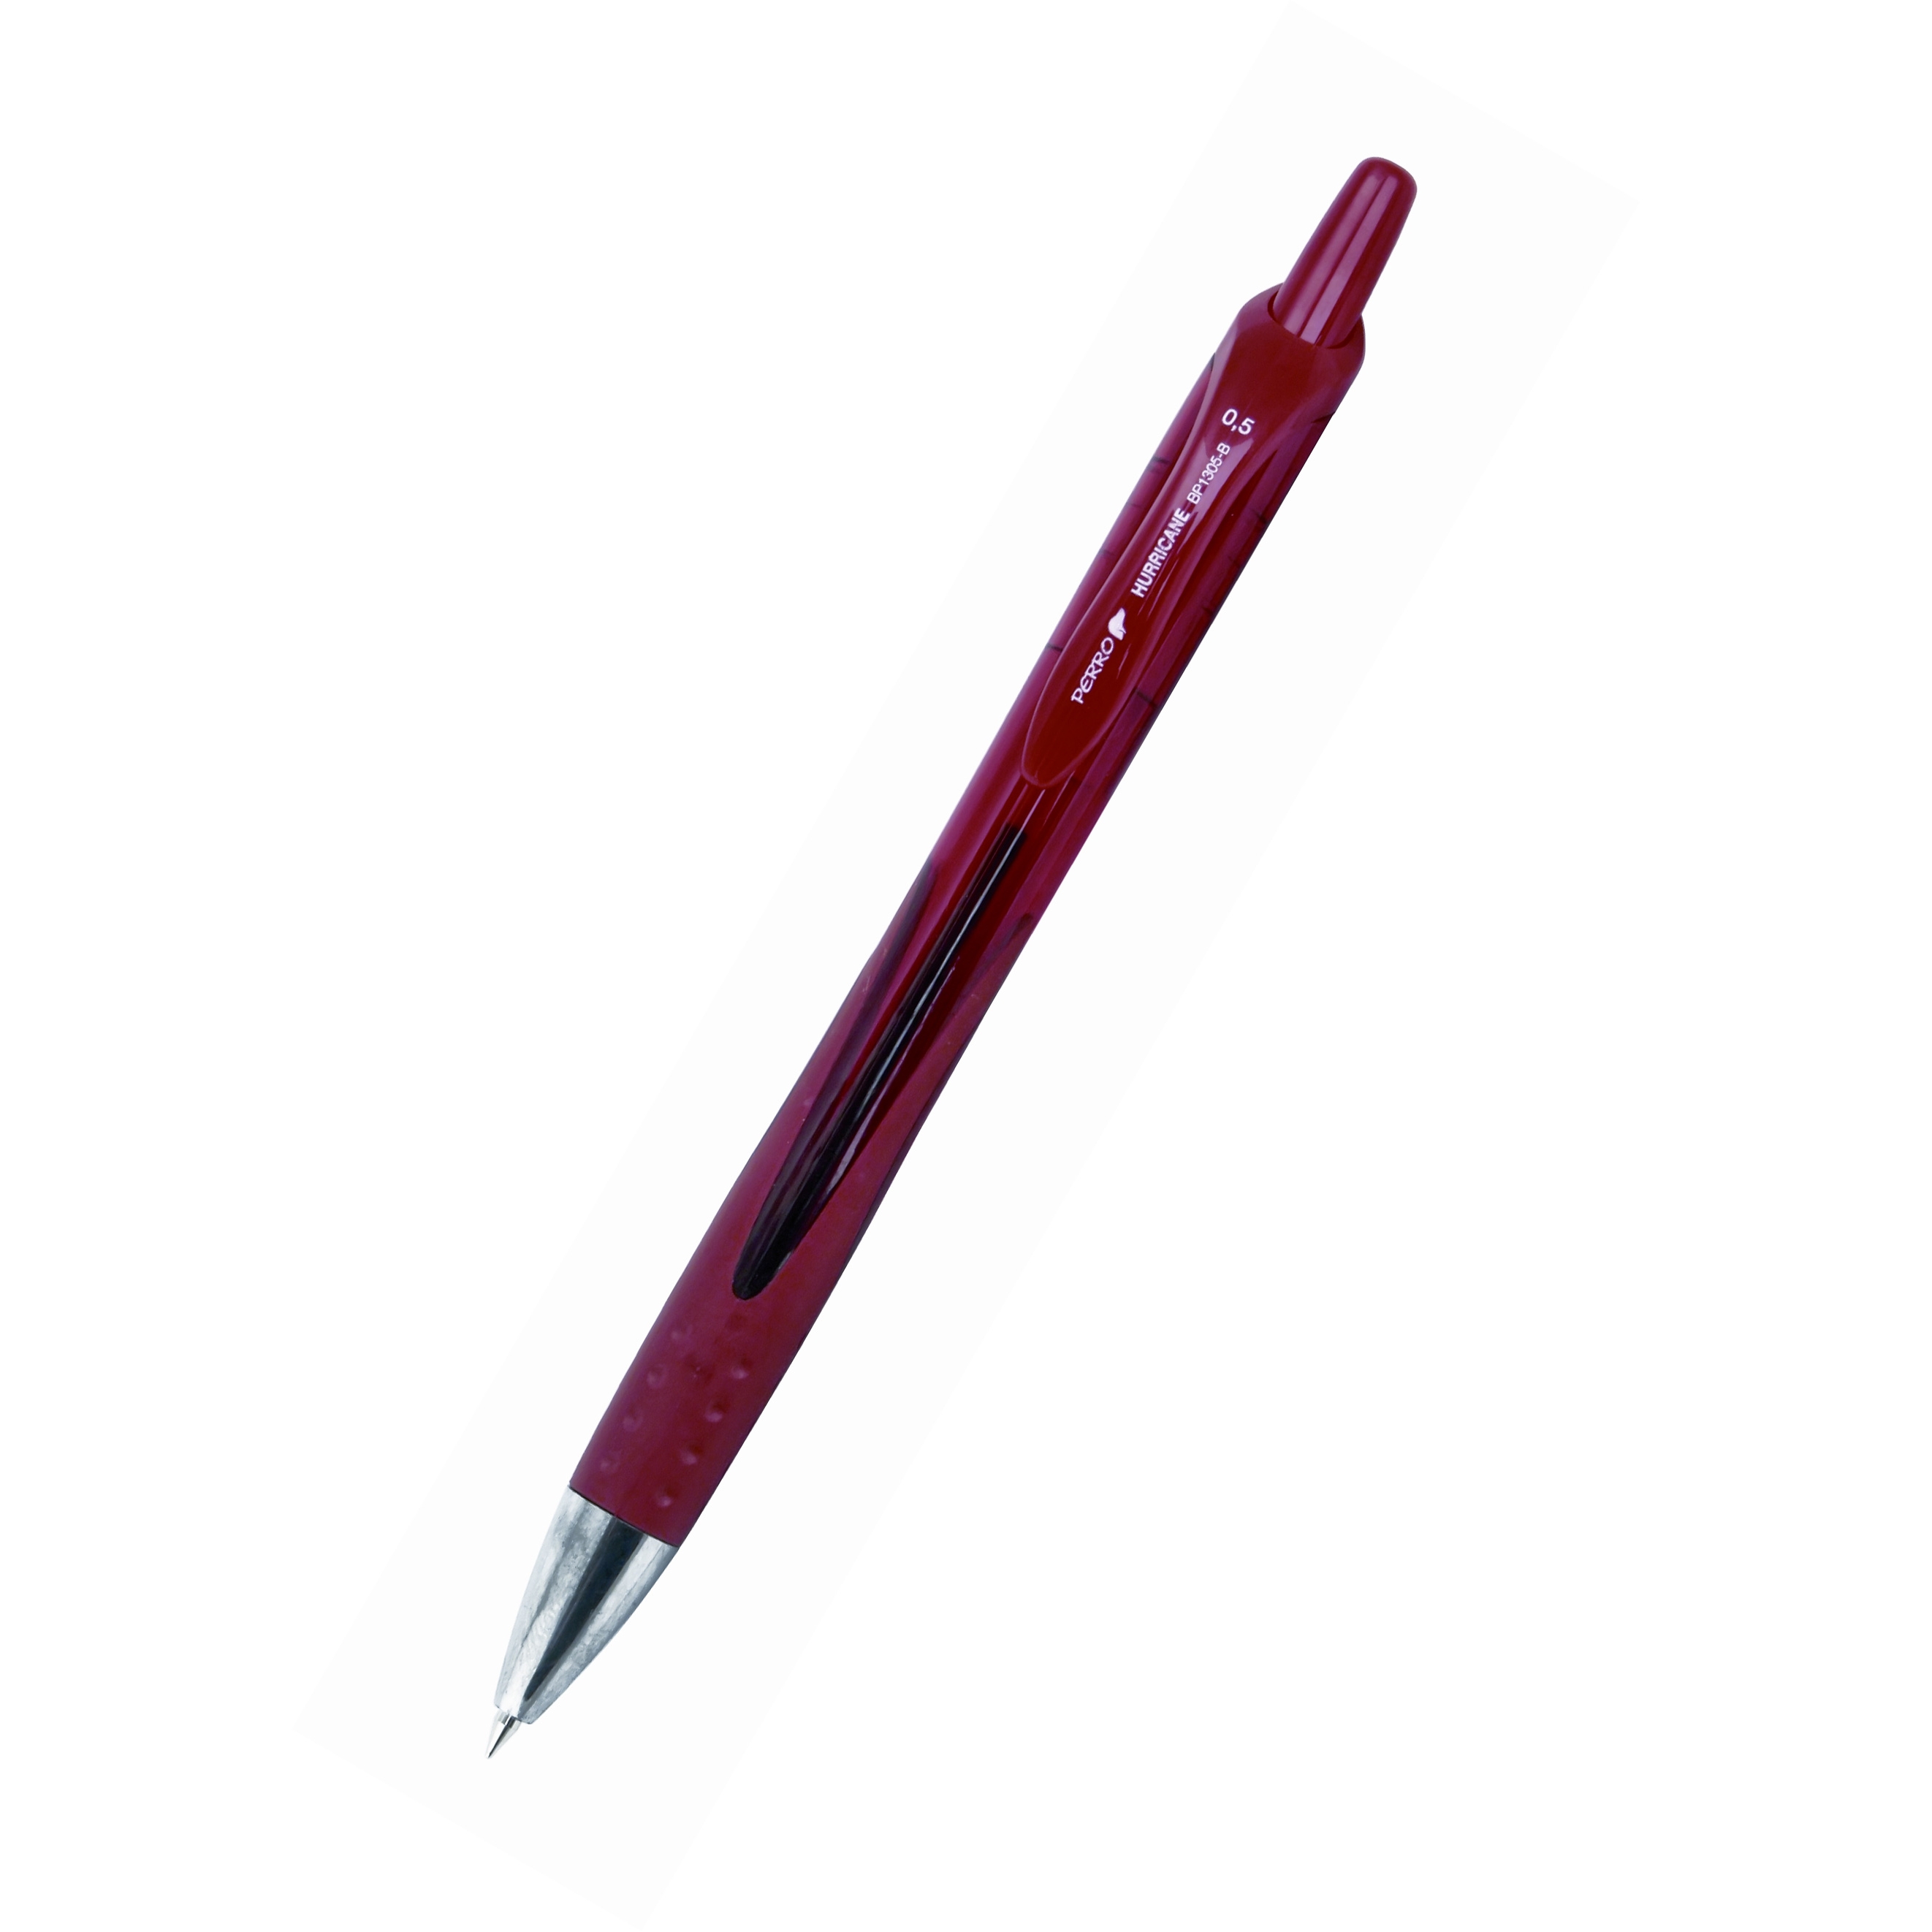 Kuličkové pero Perro Hurricane, 0,5mm, červená